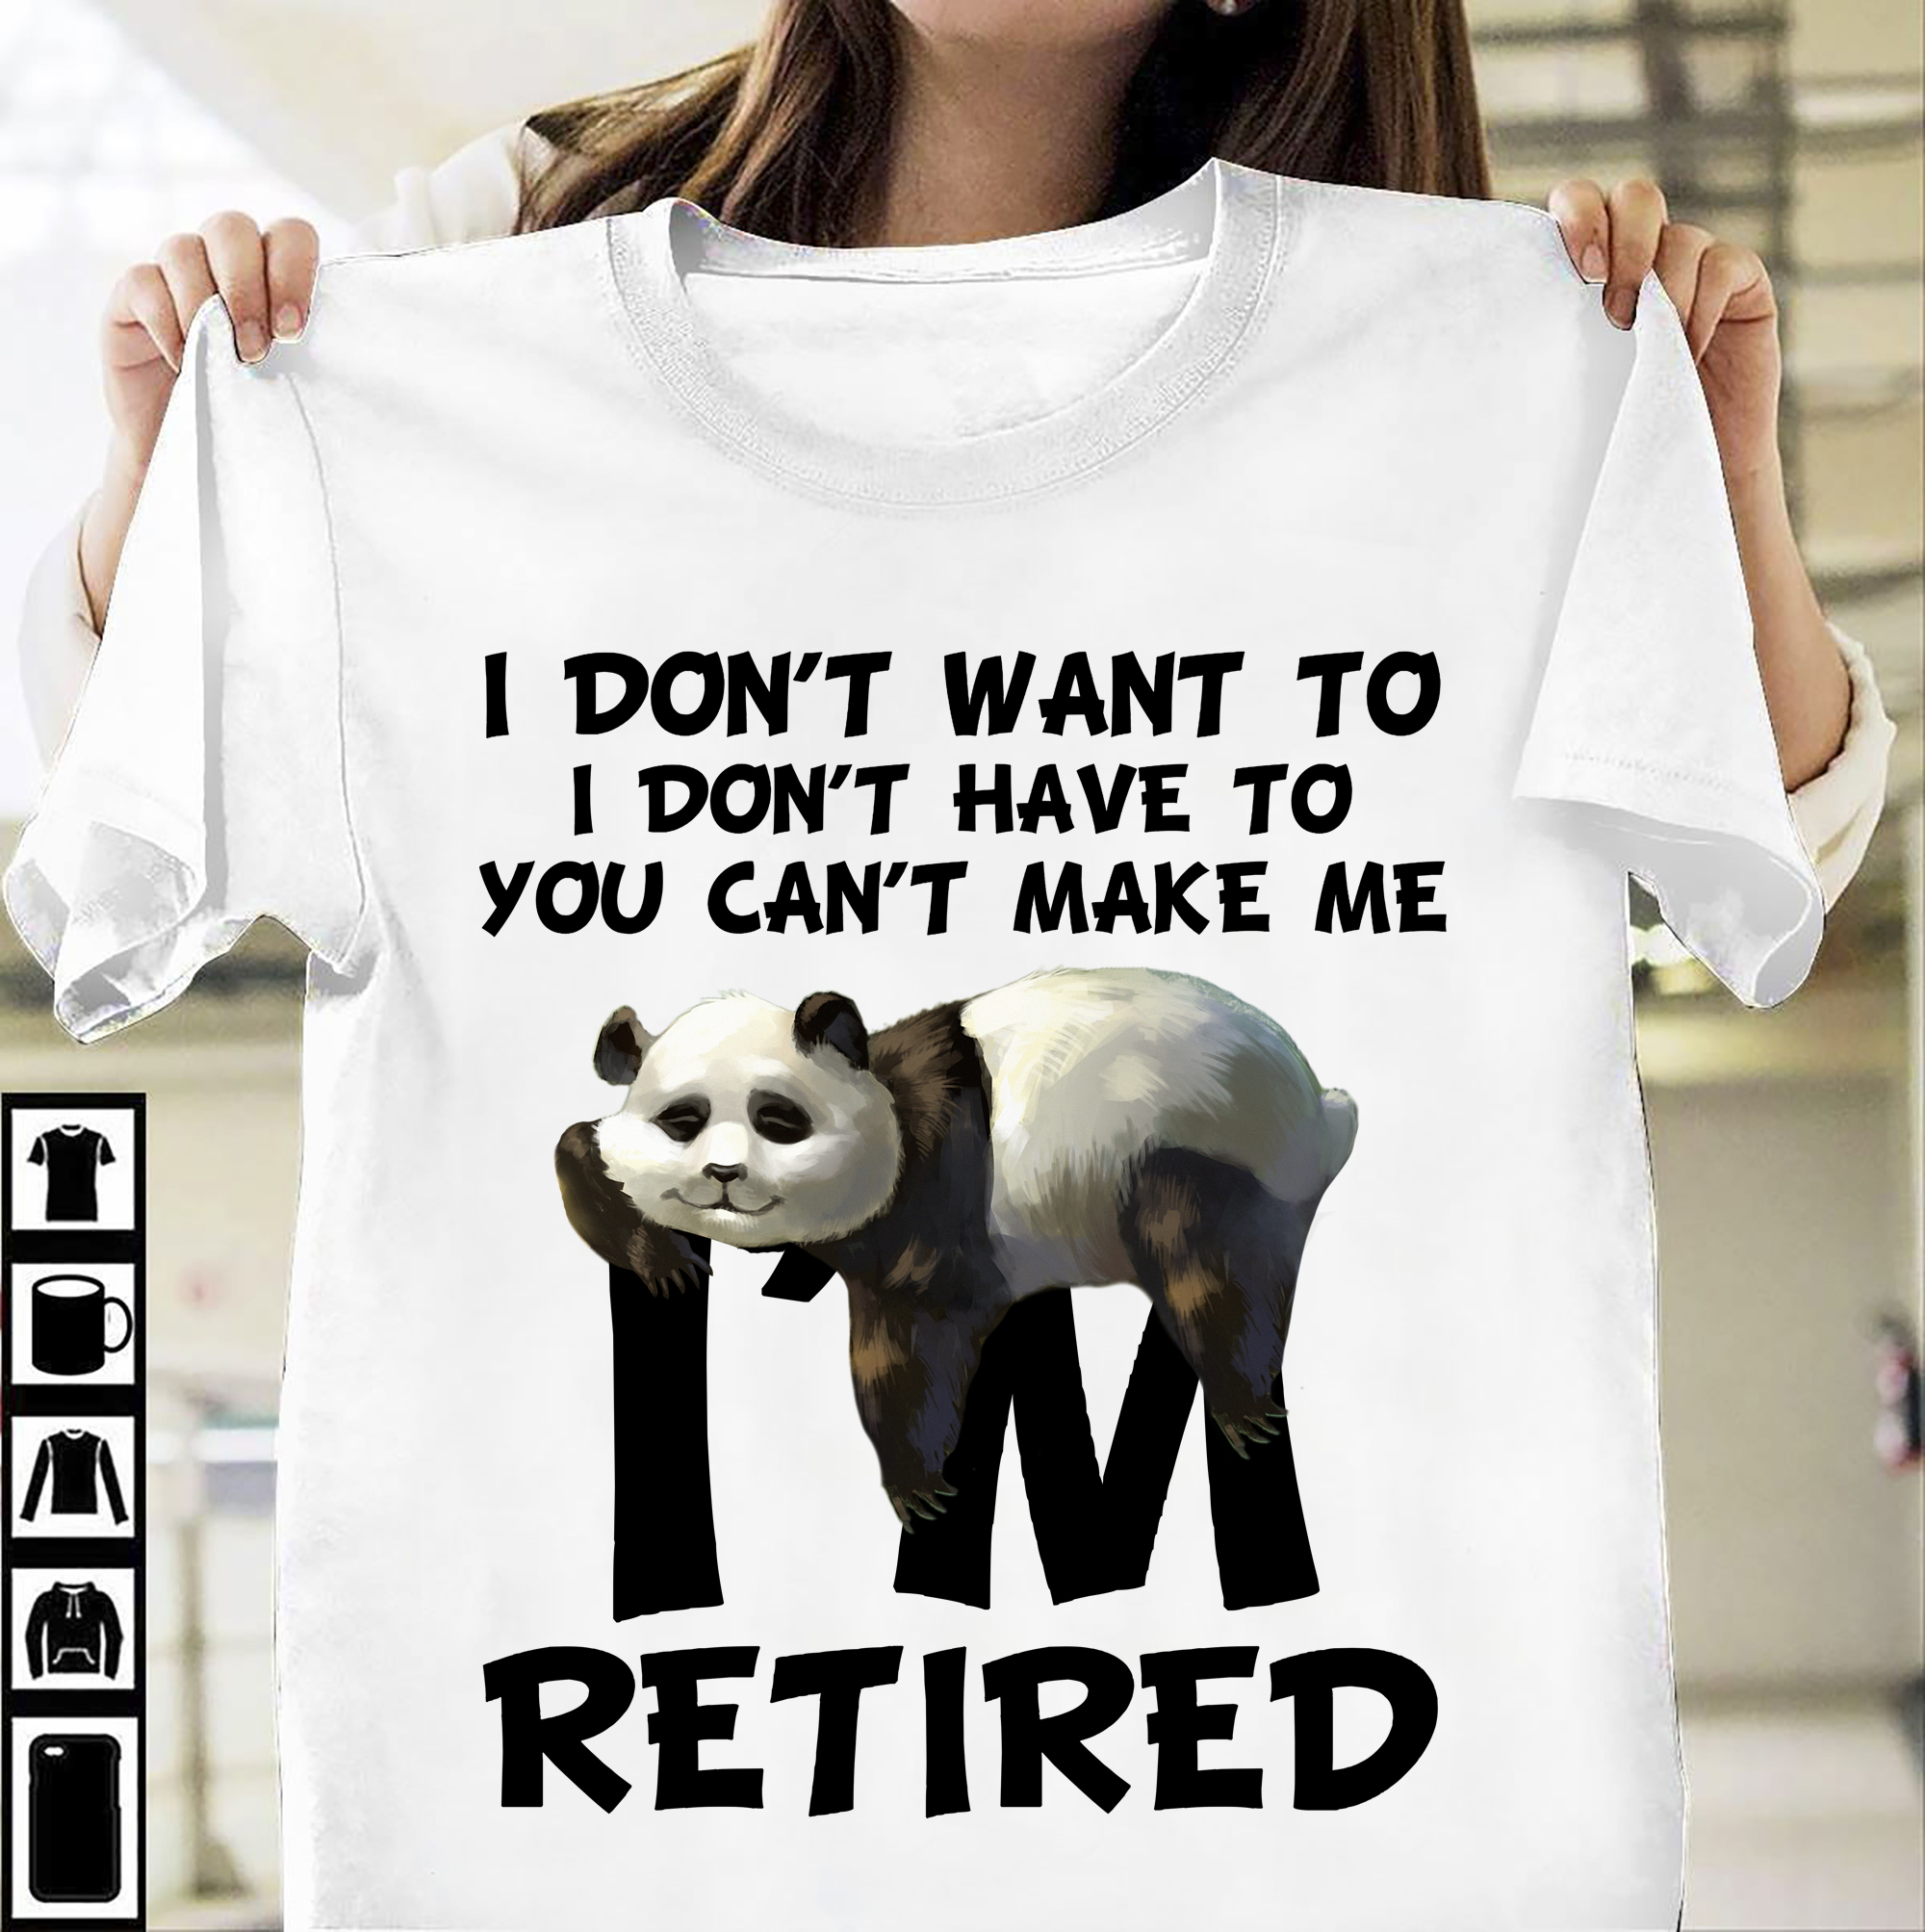 I don't want to I don't have to you can't make me I'm retired - Panda lover